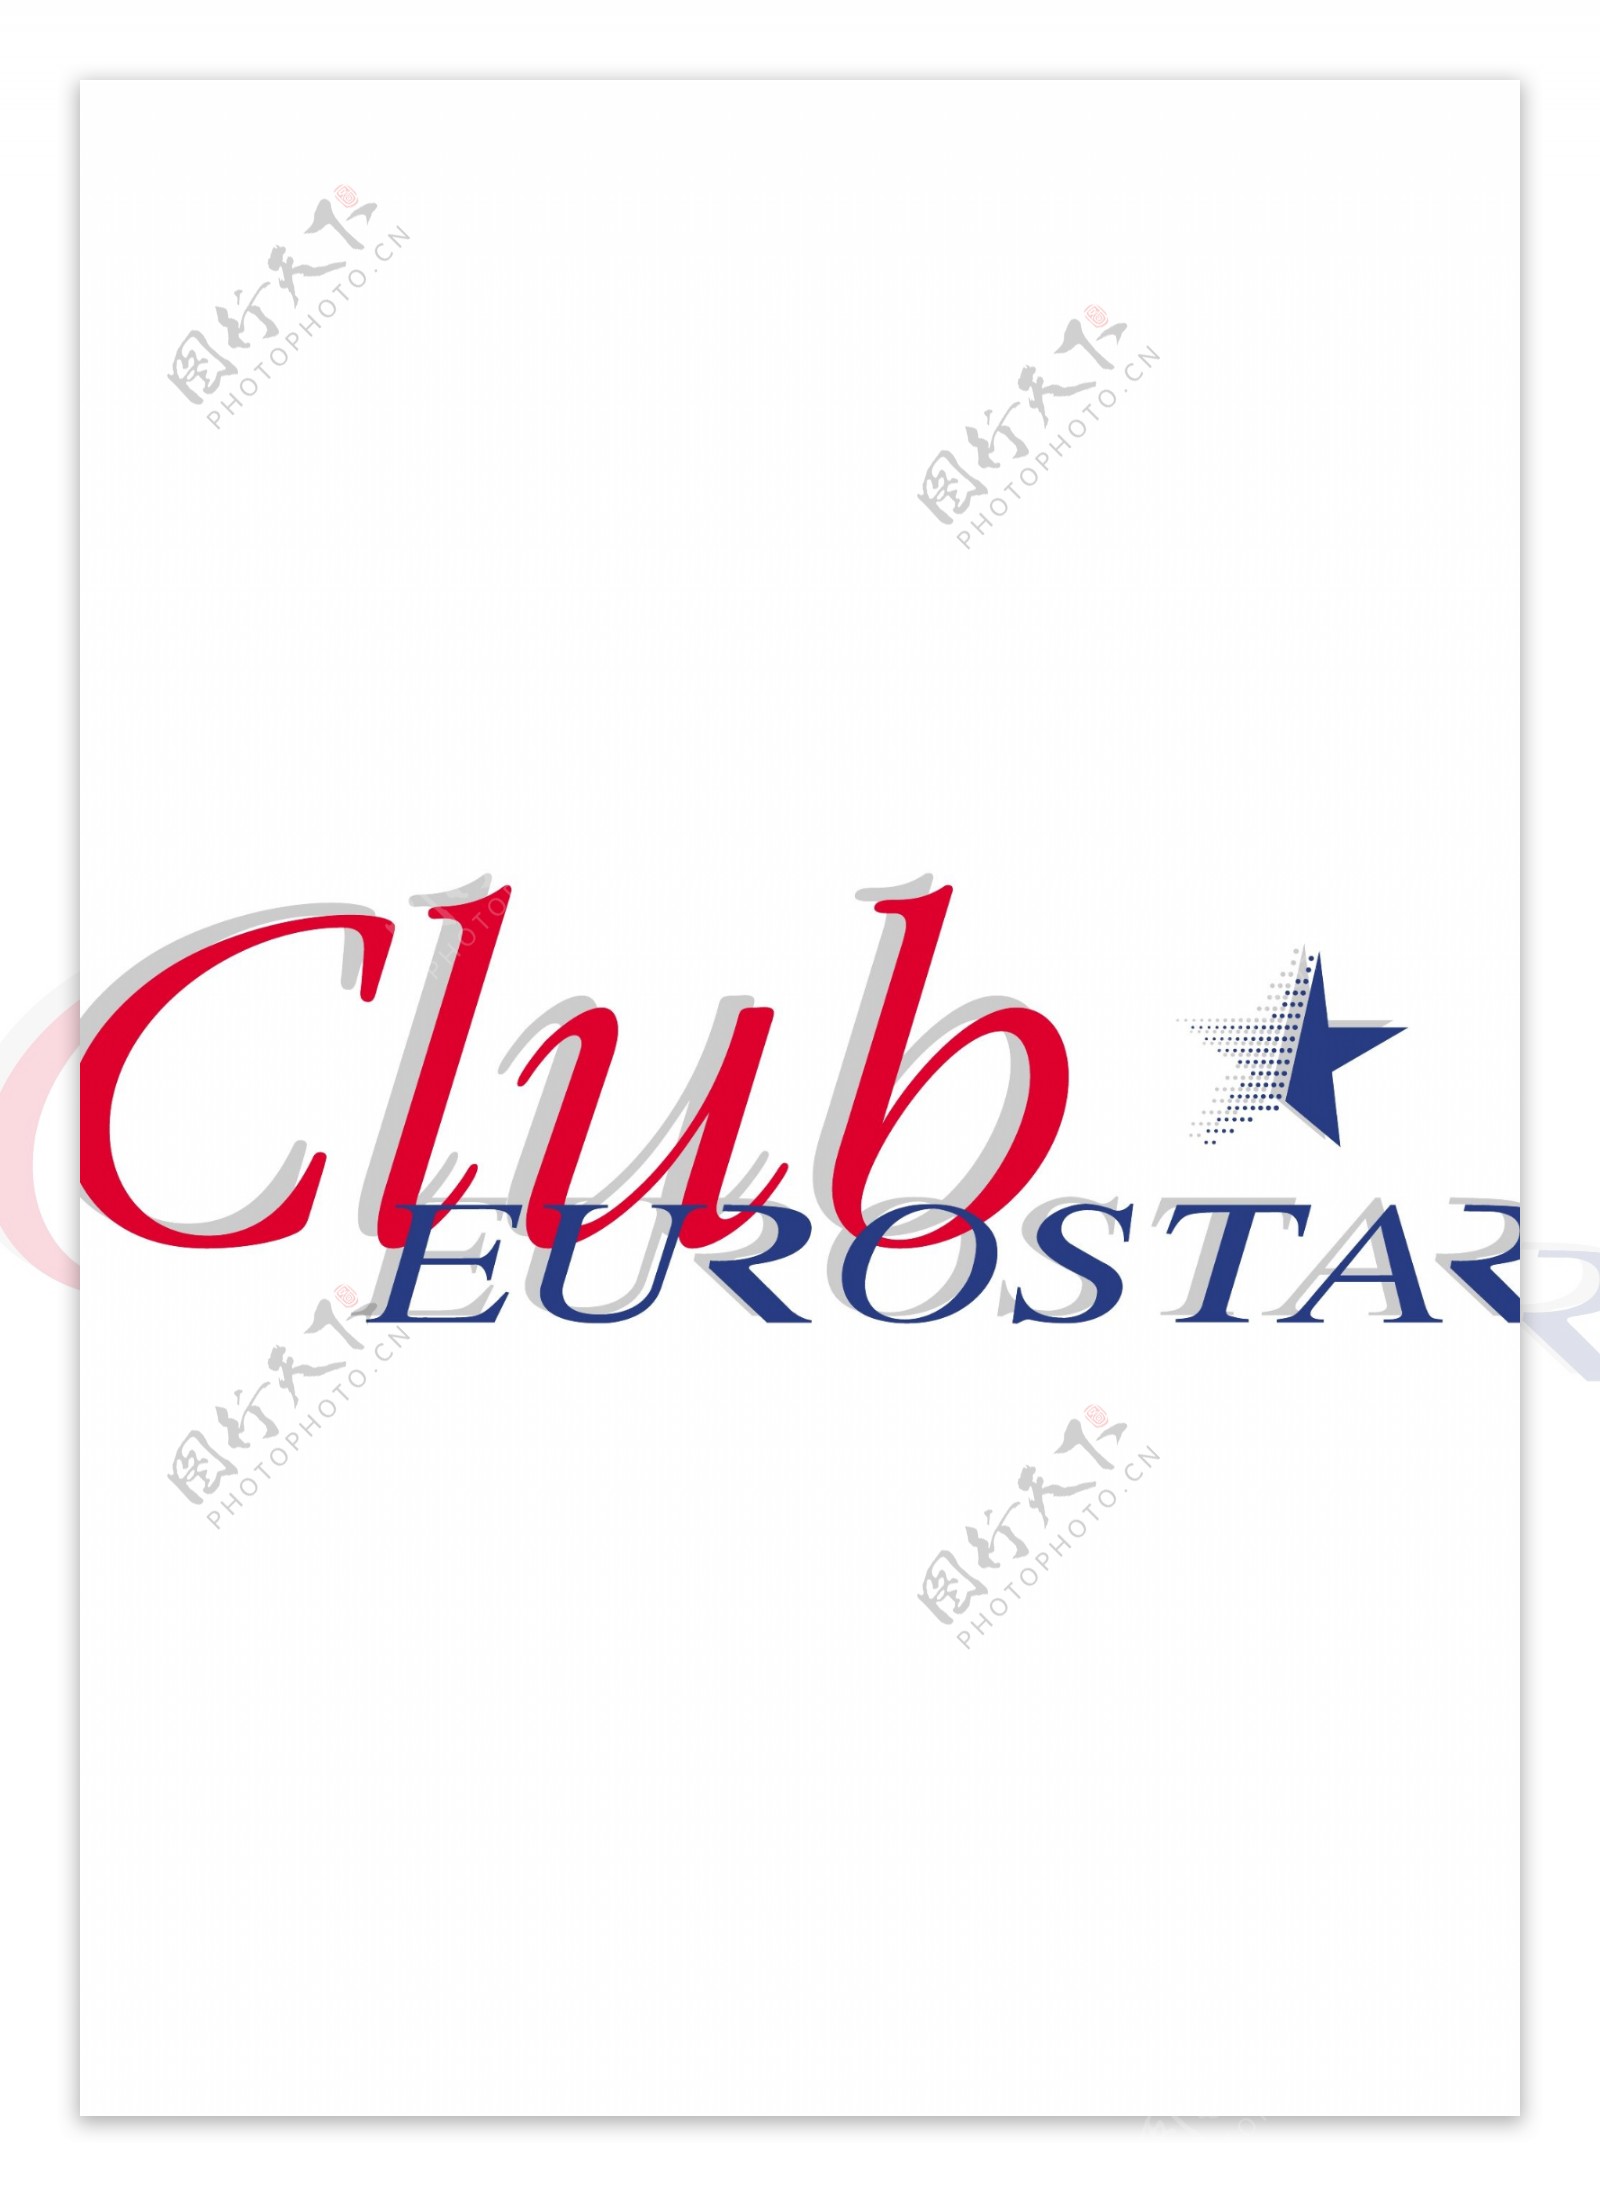 ClubEurostarlogo设计欣赏ClubEurostar公路运输标志下载标志设计欣赏